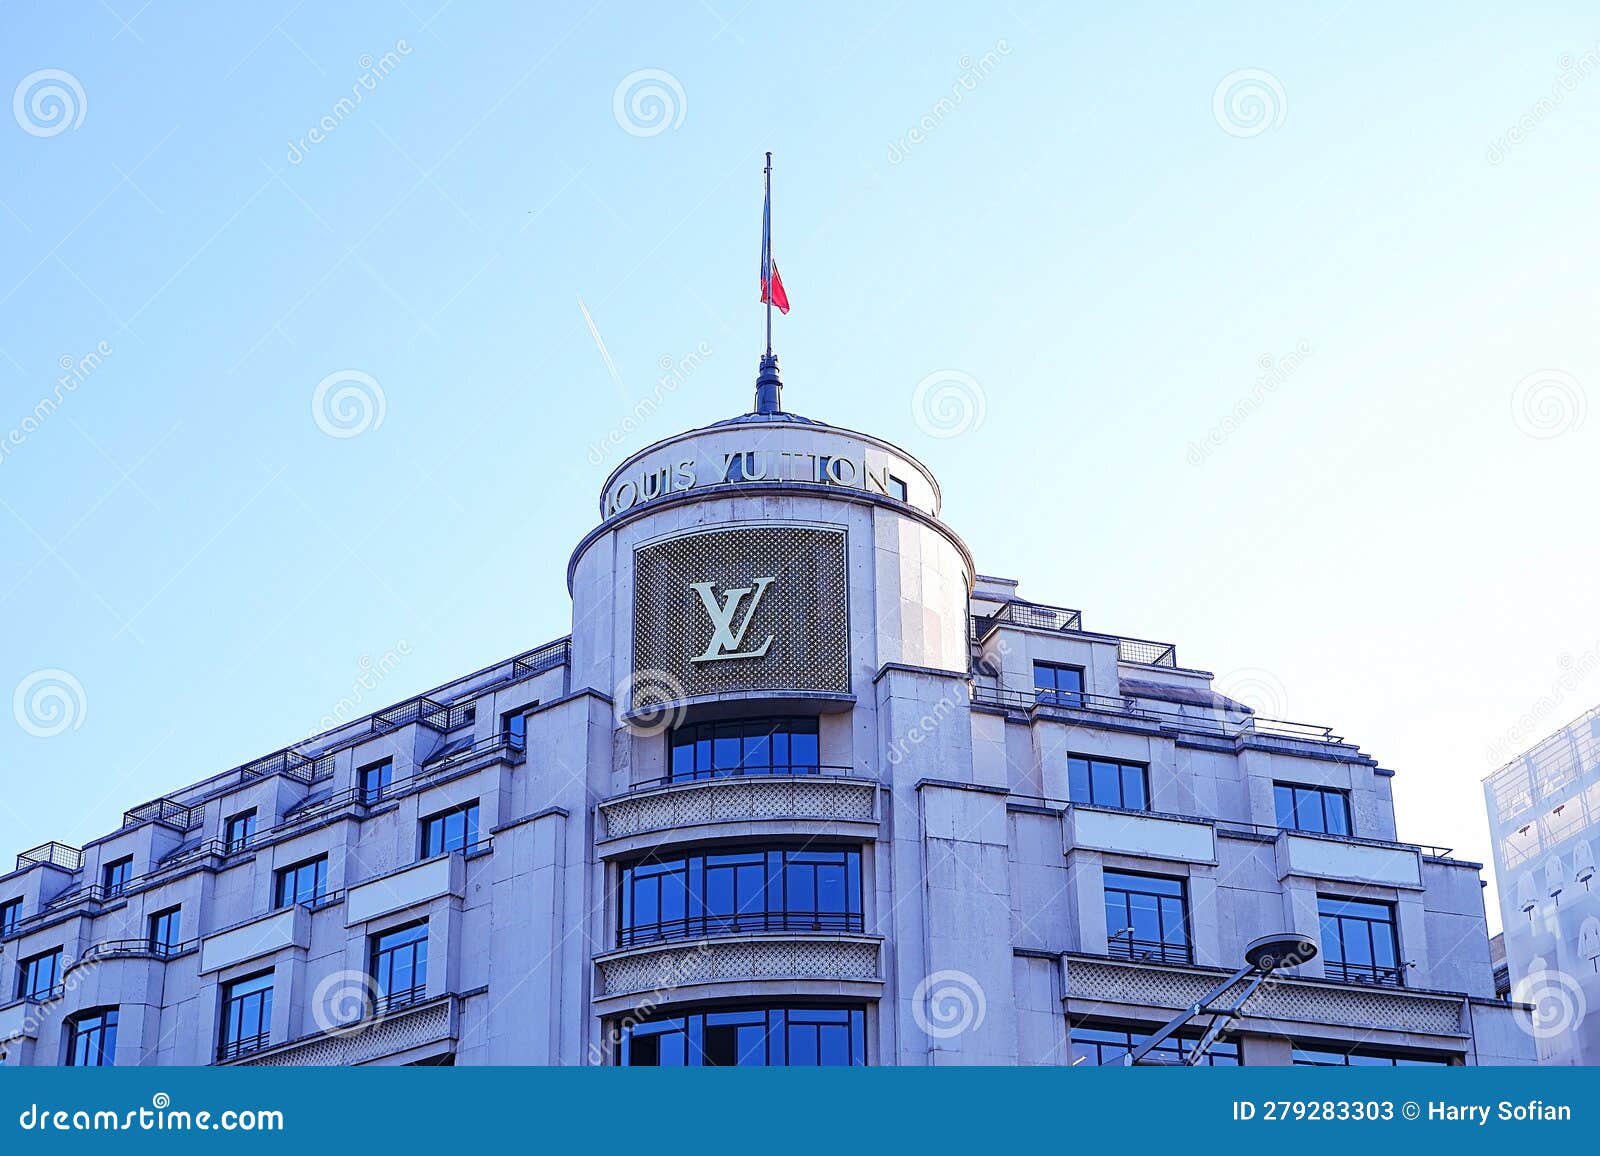 Louis Vuitton Maison Vendôme Store in Paris, France